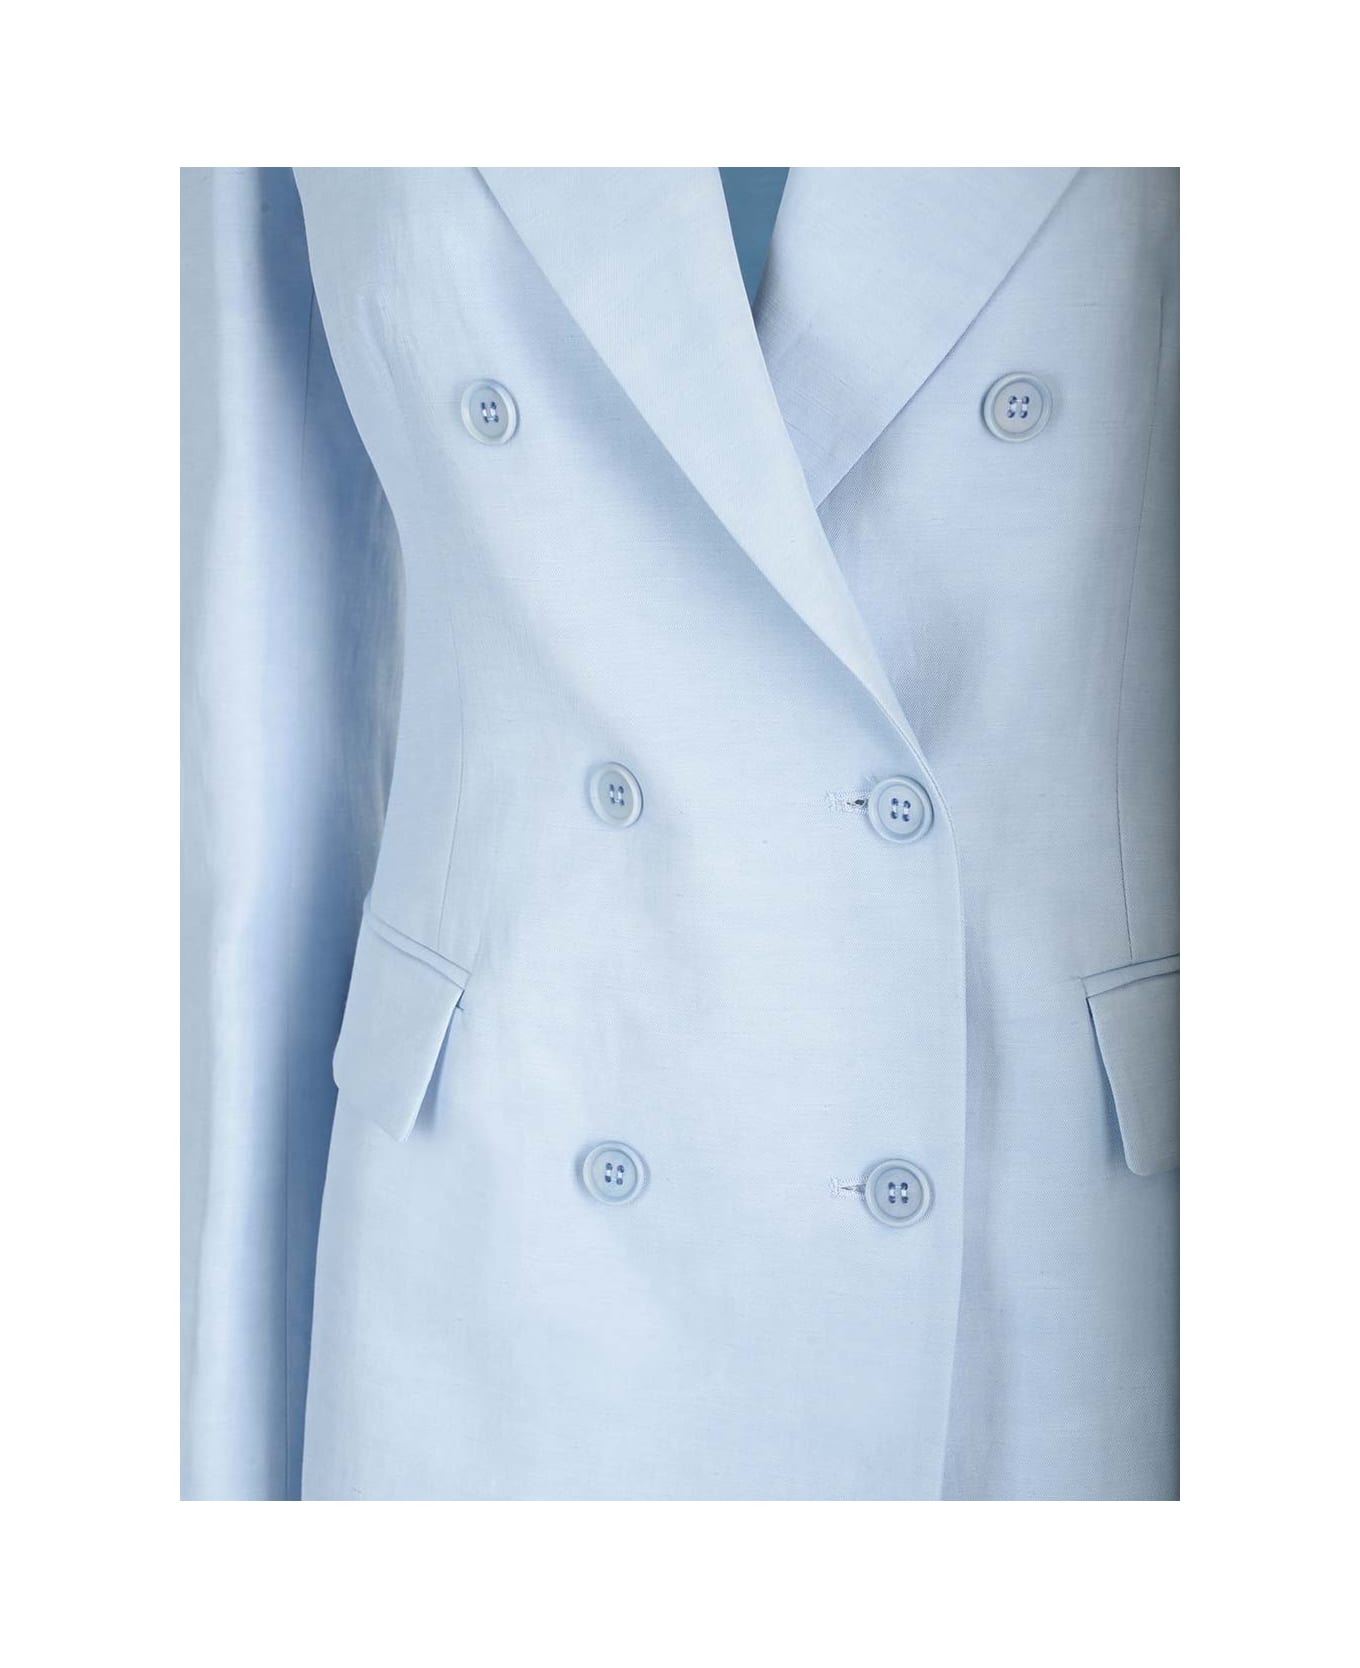 Parosh Linen And Viscose Blazer - Azzurro Polvere ジャケット